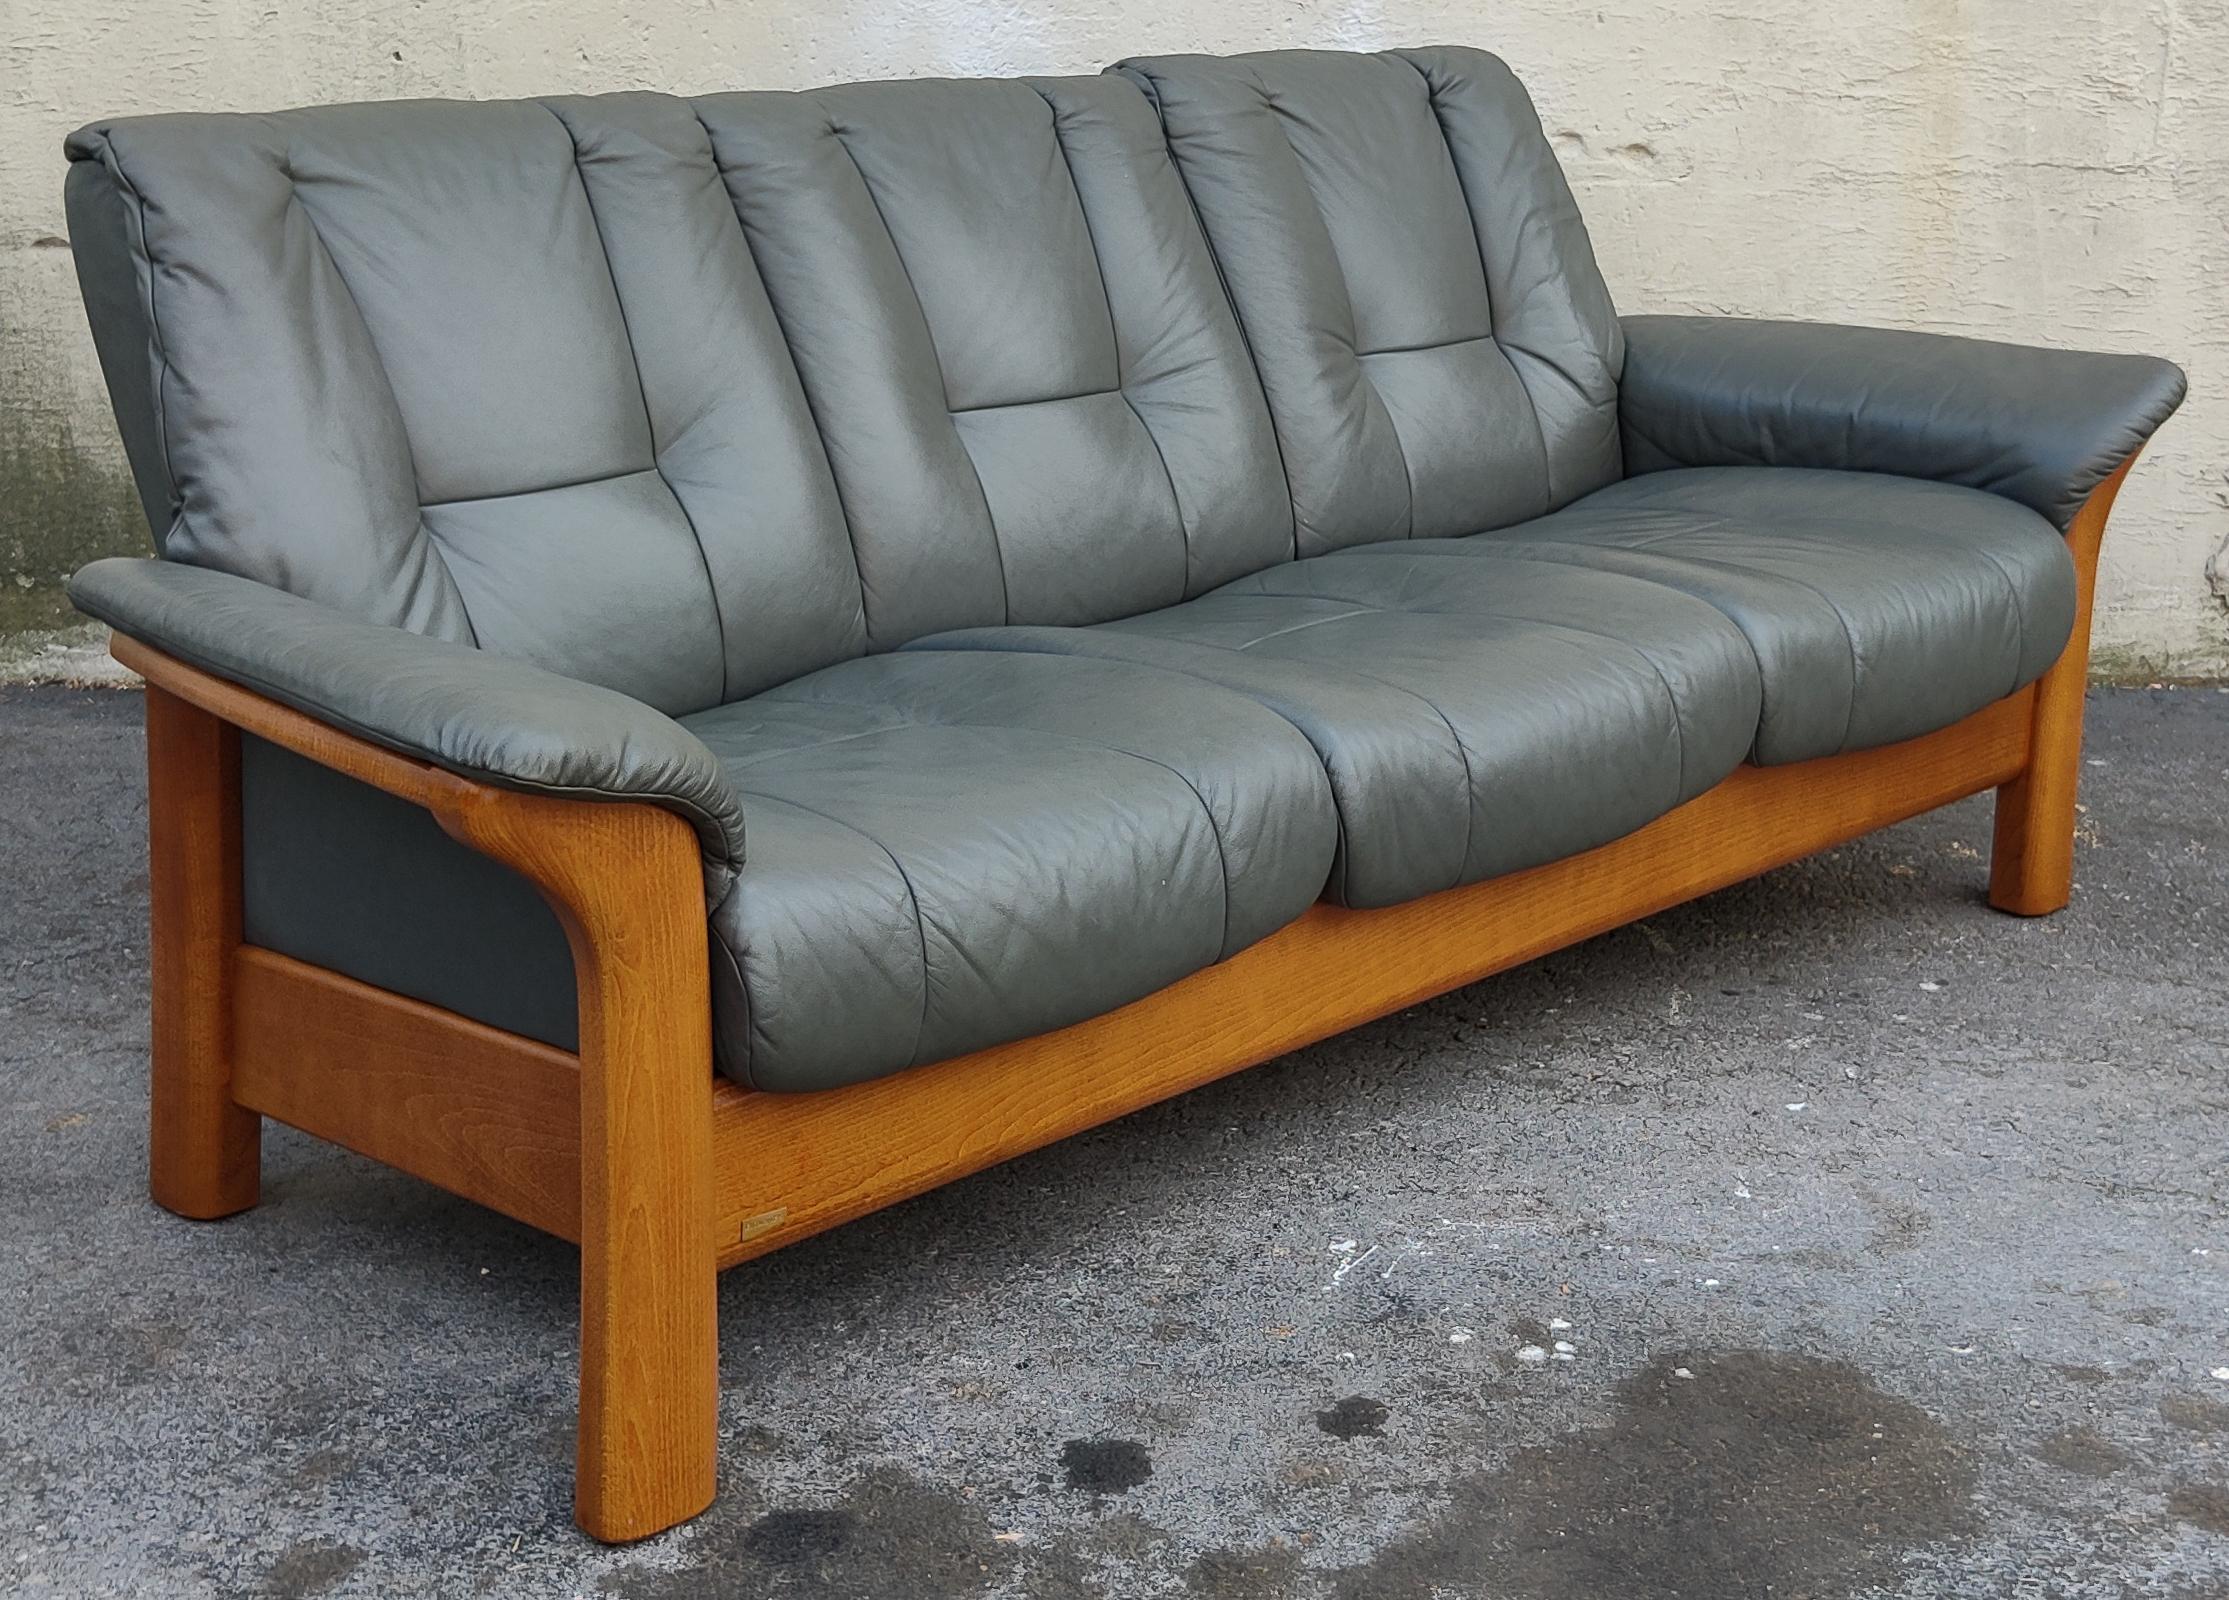 Dieses elegante und raffinierte Sofa wurde von Ekornes für ihre Marke Stressless hergestellt. Er ist aus massivem Teakholz gefertigt und mit einer sehr warmen Beize versehen, die an die berühmten Stressless-Loungesessel erinnert. Ergänzt wird die